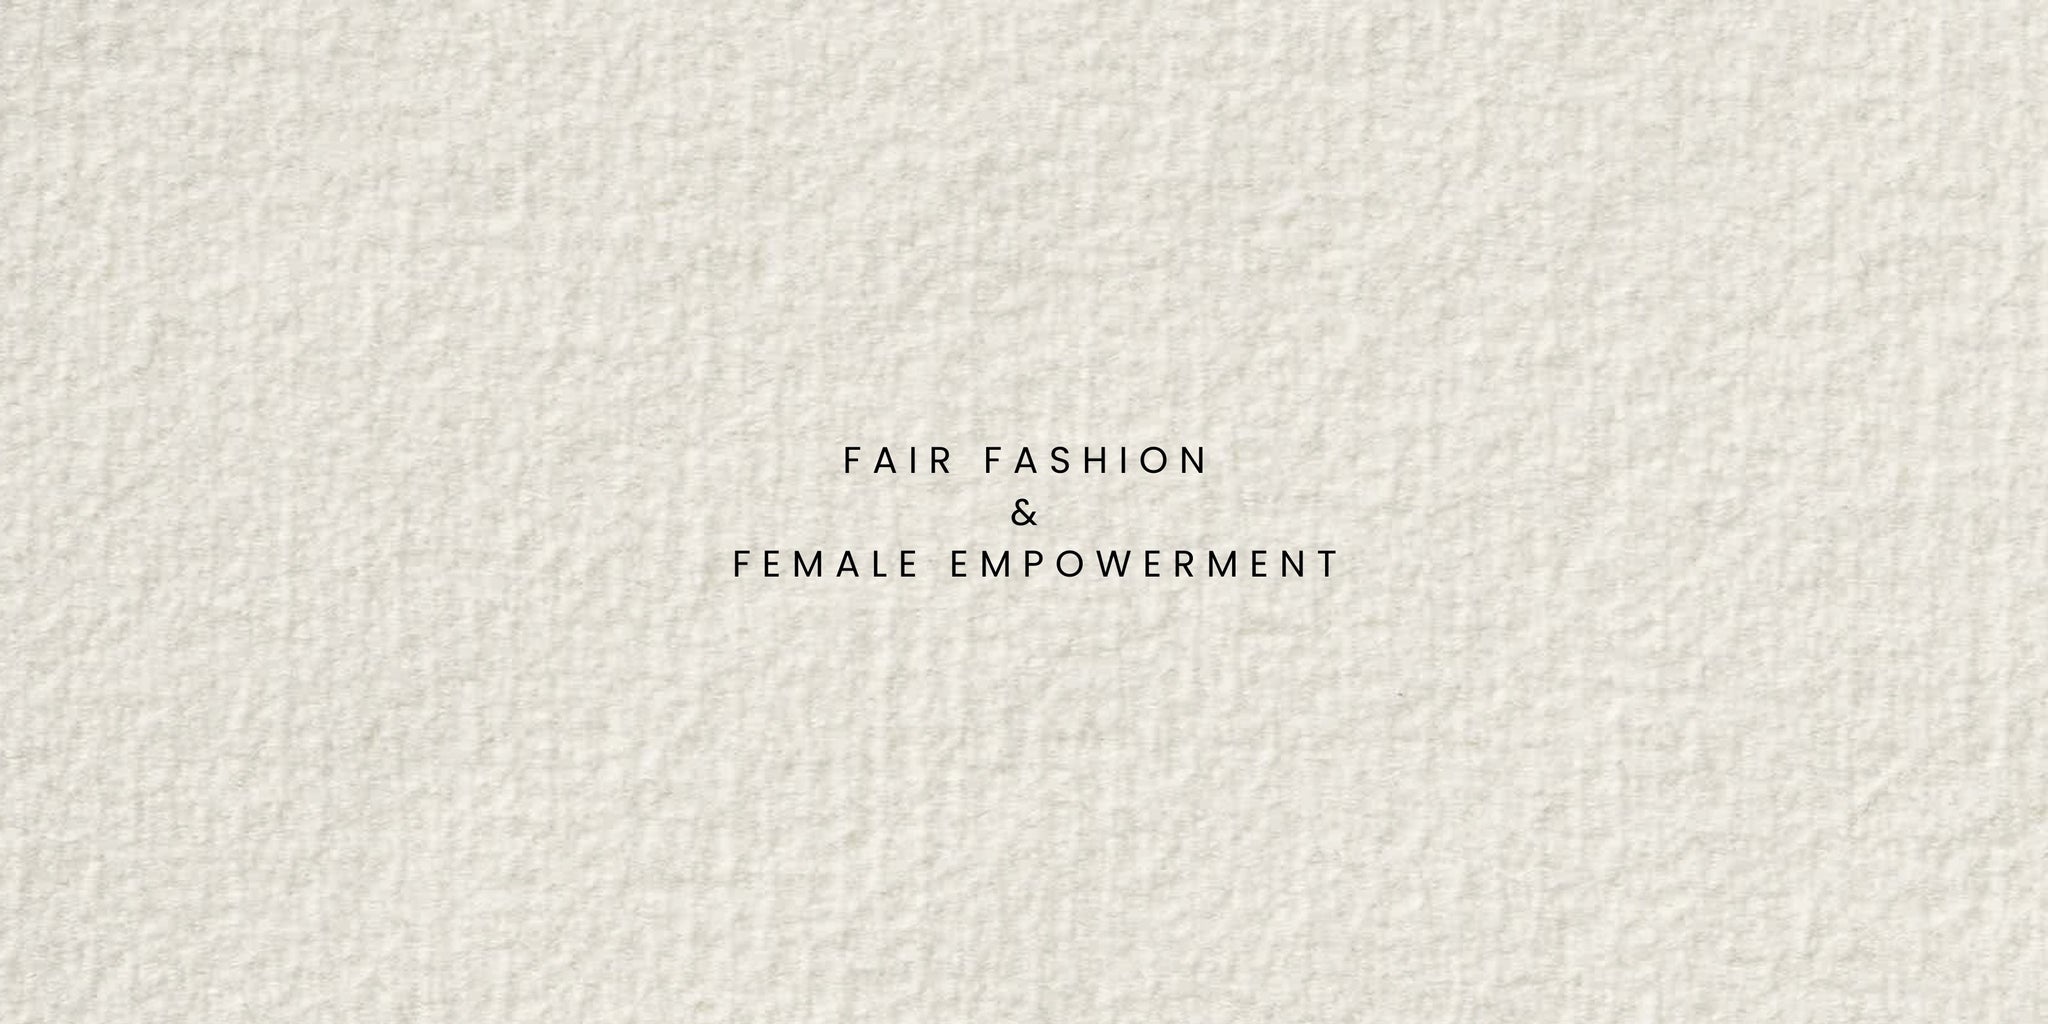 Fair Fashion & Female Empowerment